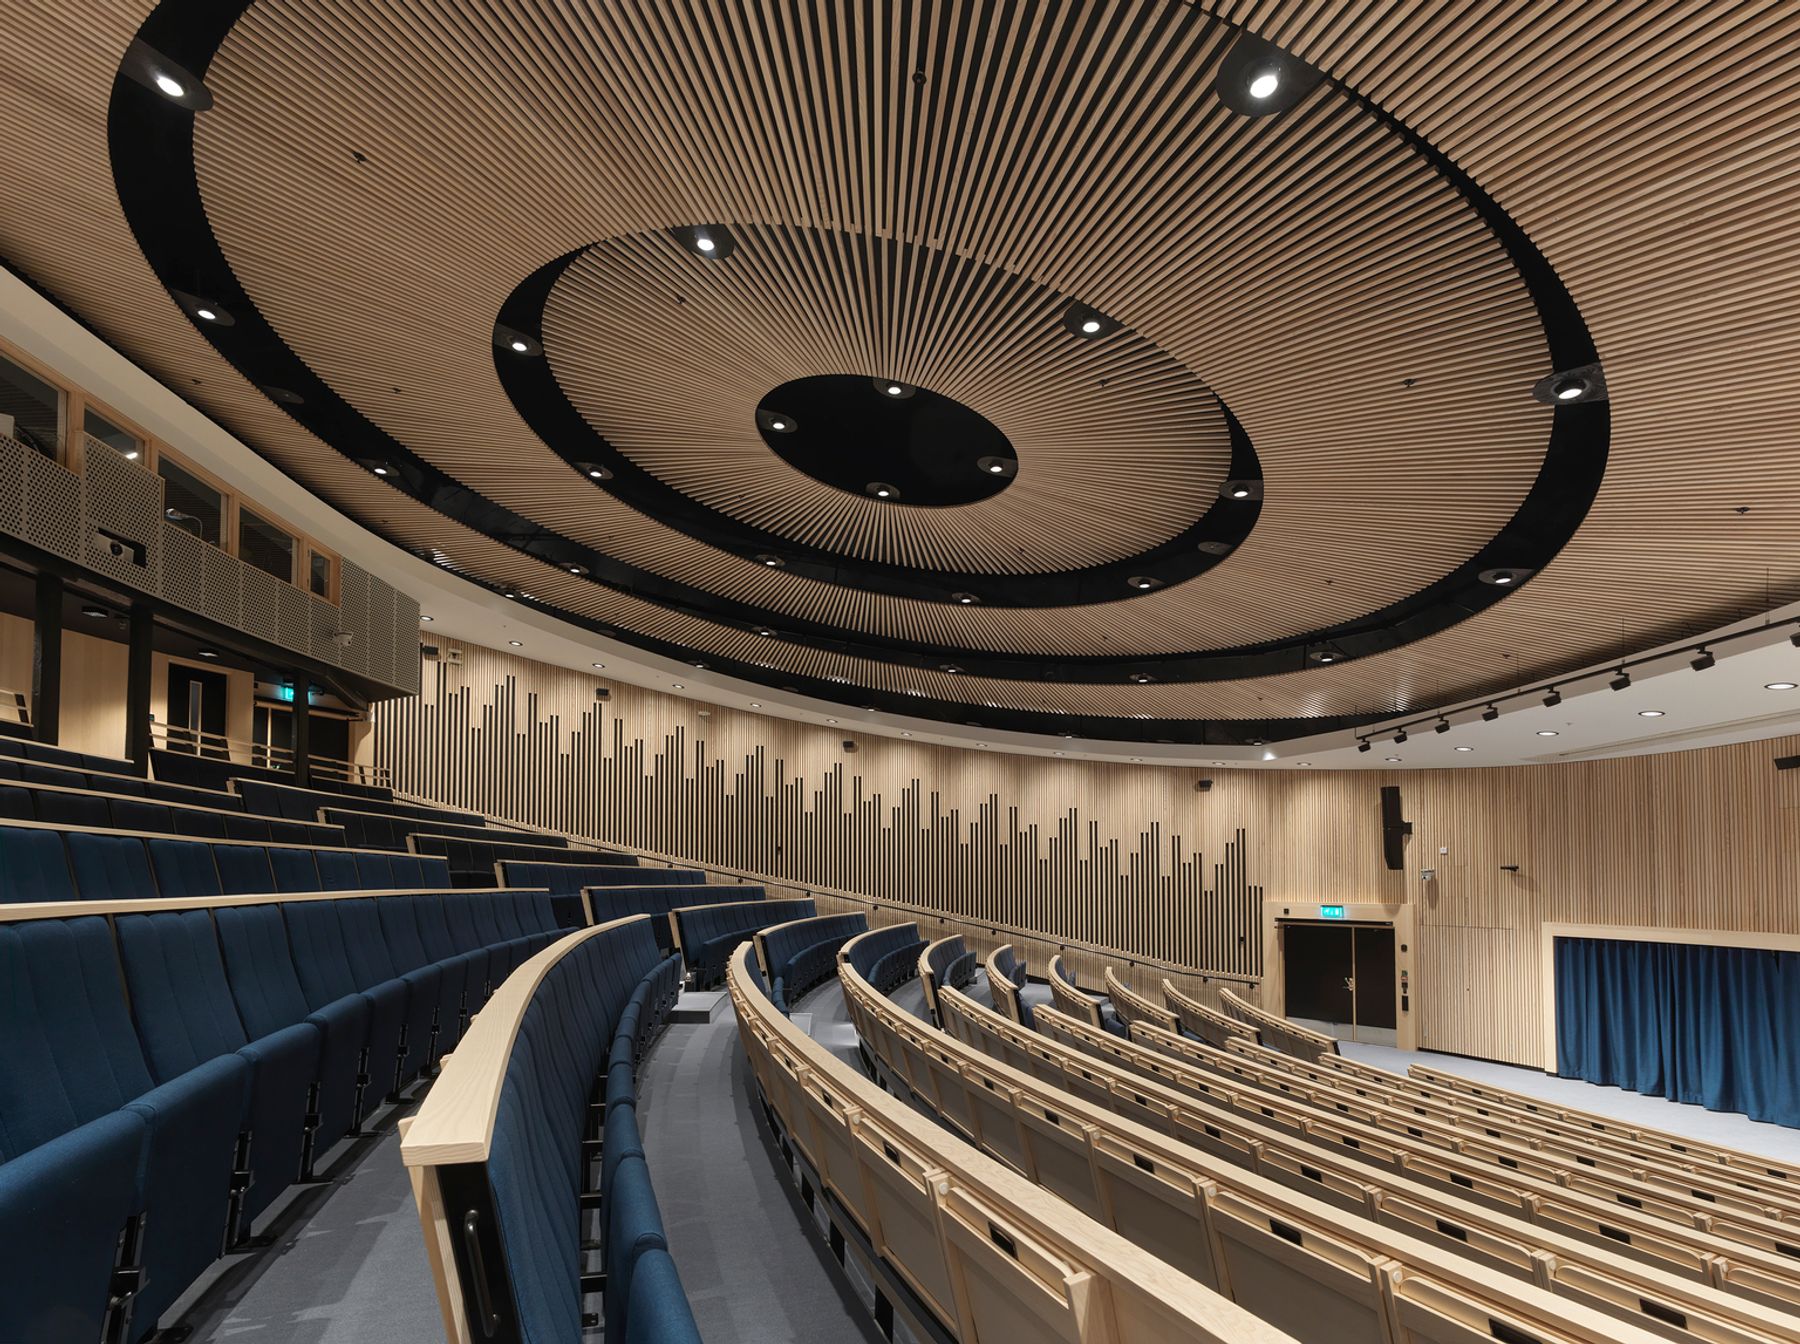 Auditorium, Lund. Architecture: ZOOM Arkitekter i Lund. Lighting design: Stefan Malm, Sweco, Malmö. Photography: Erik Wik, Kyrkotorp.